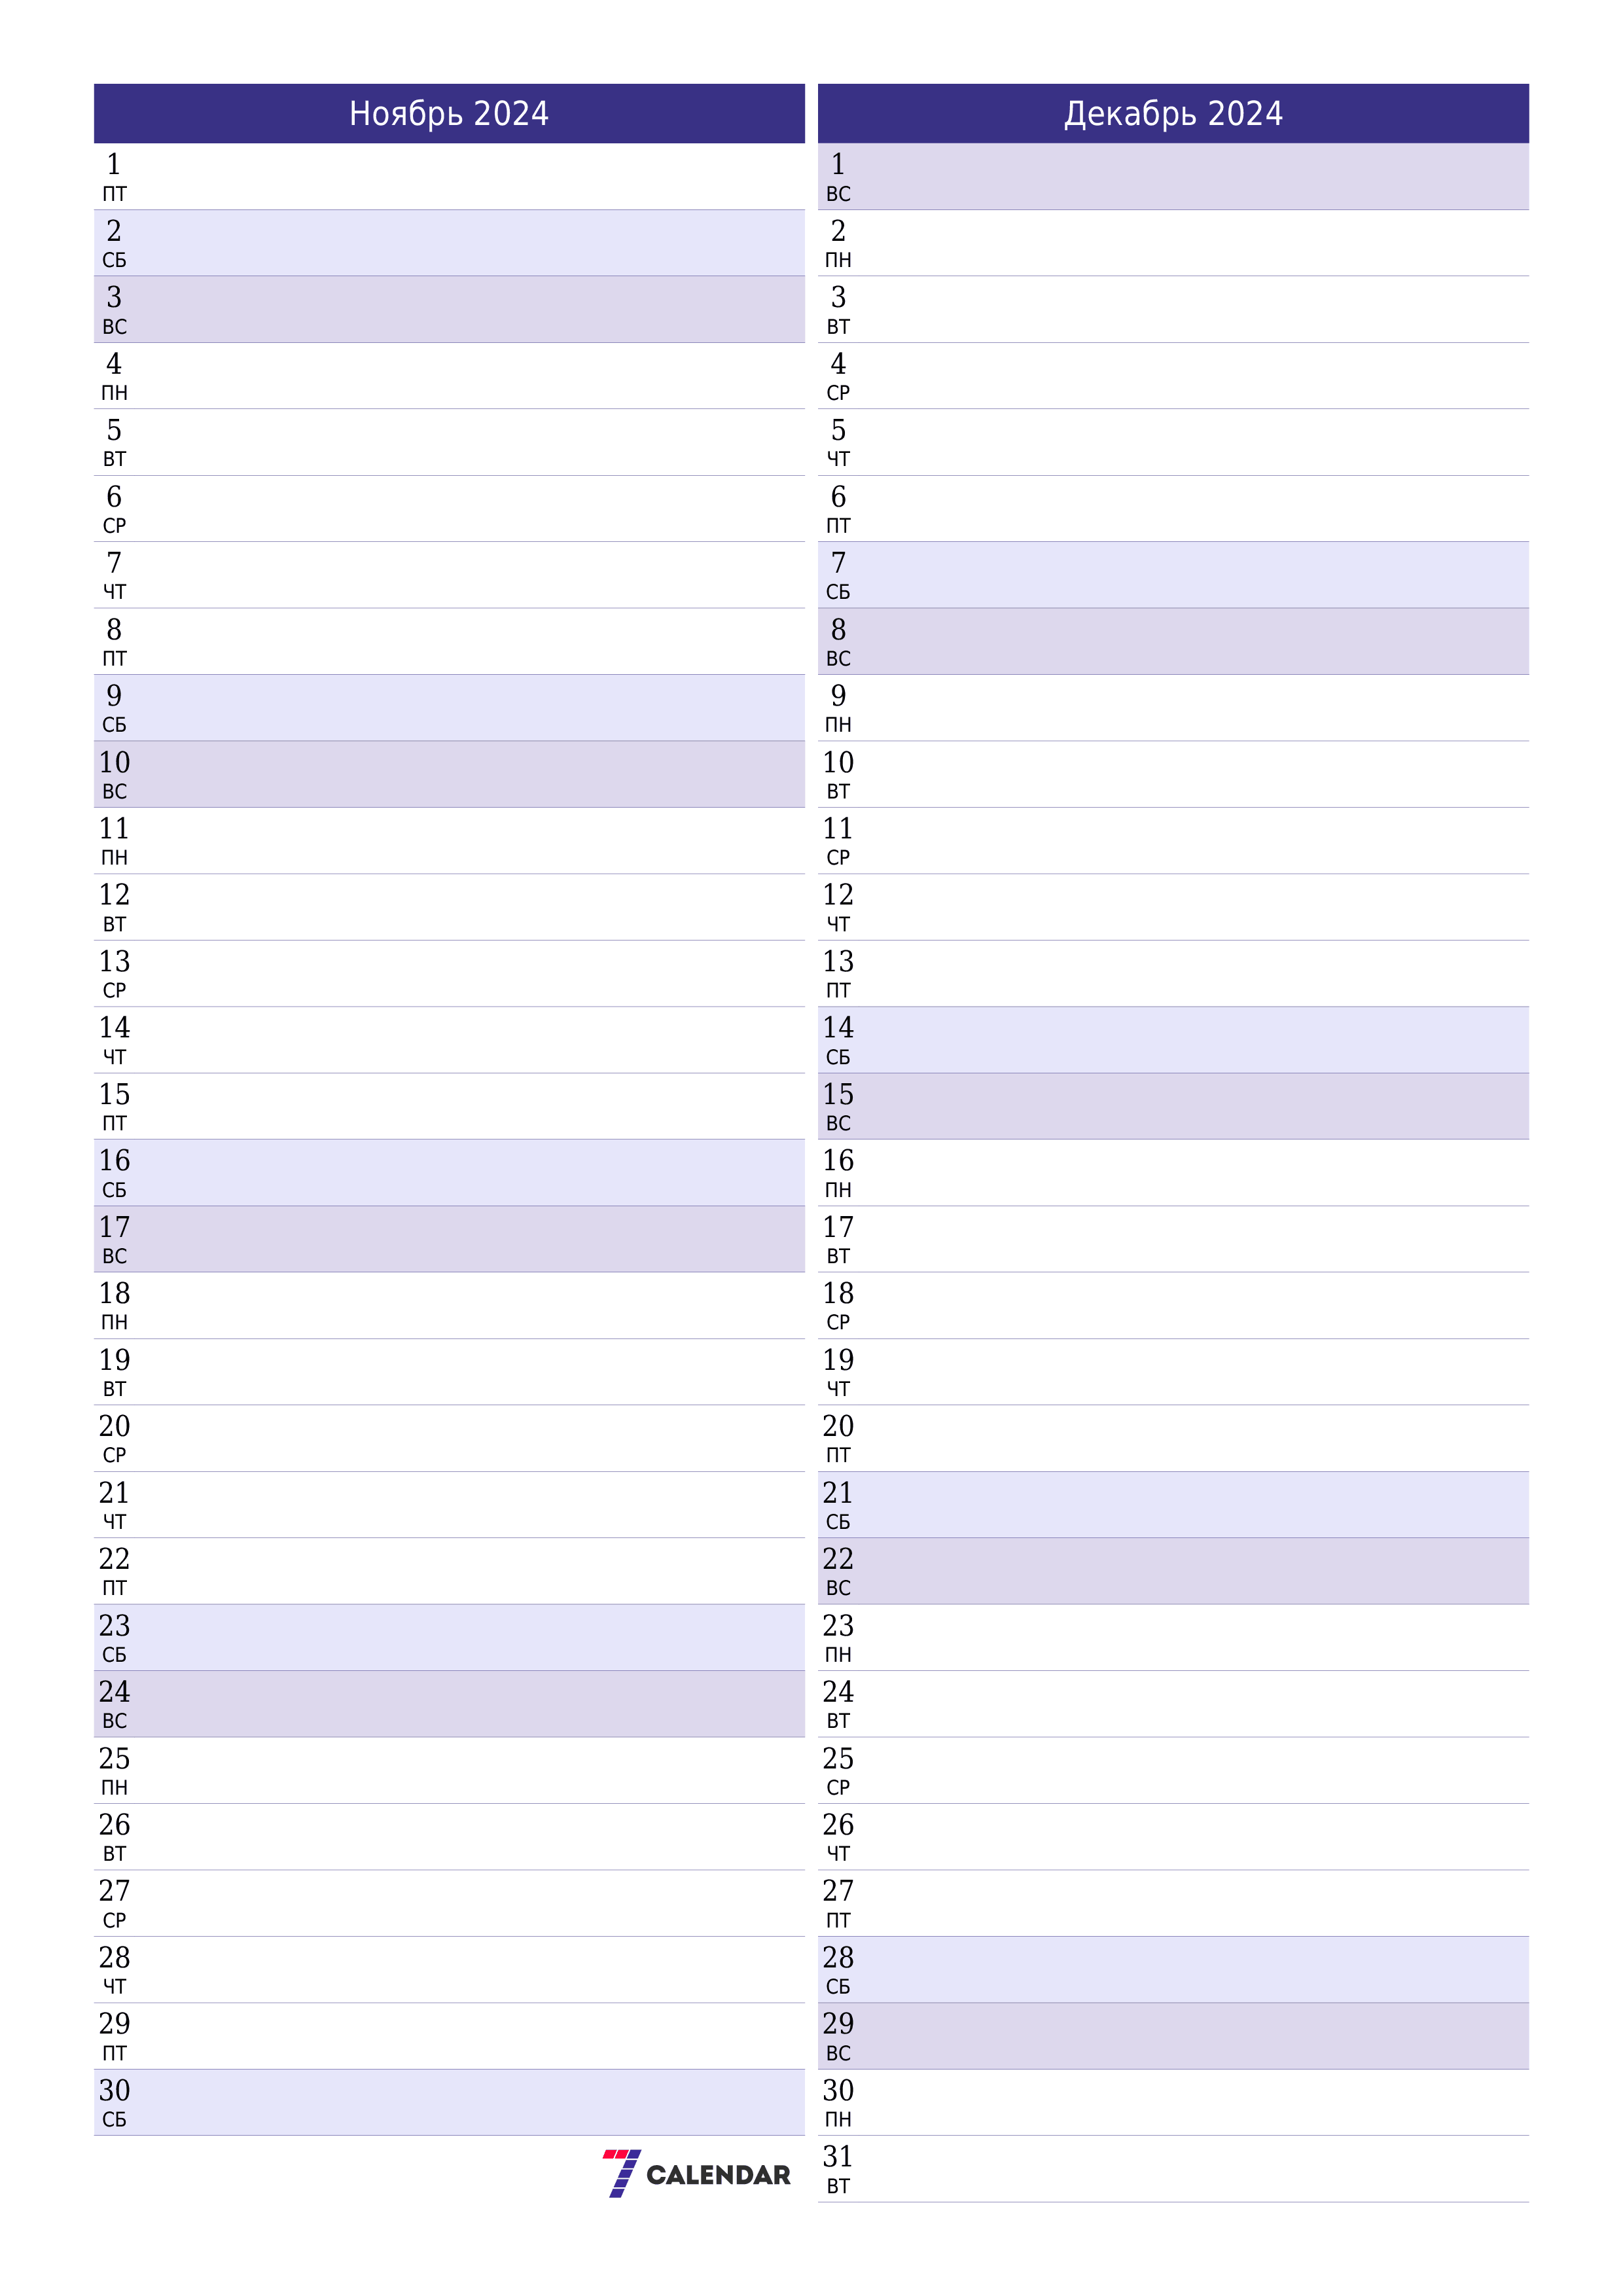 Пустой ежемесячный календарь-планер на месяц Ноябрь 2024